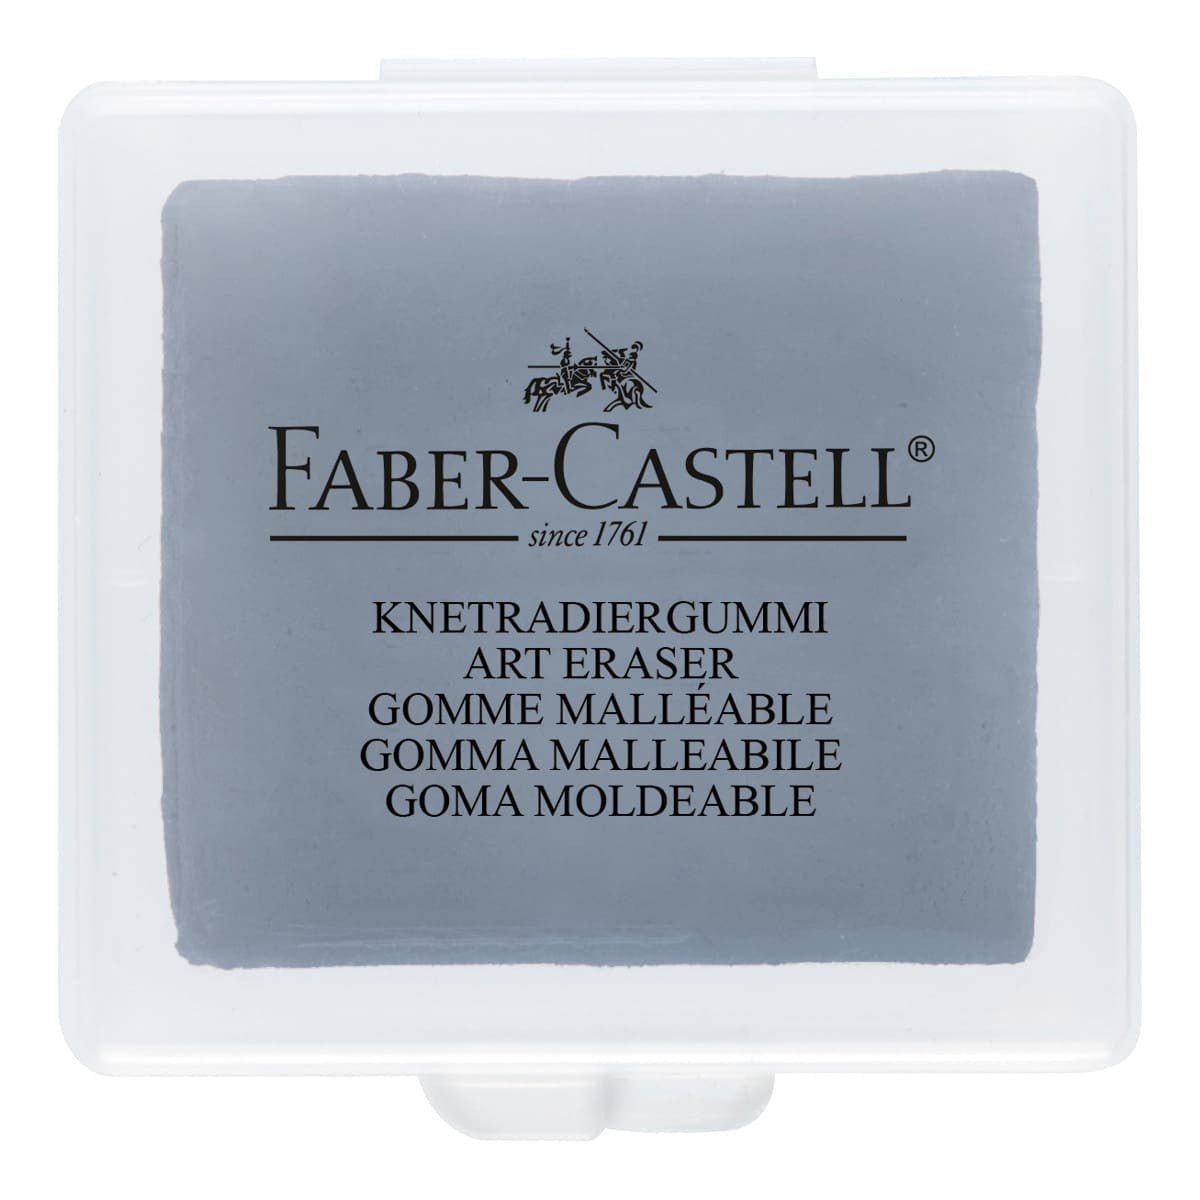 Knådgummi - Faber-Castell - Tidformera